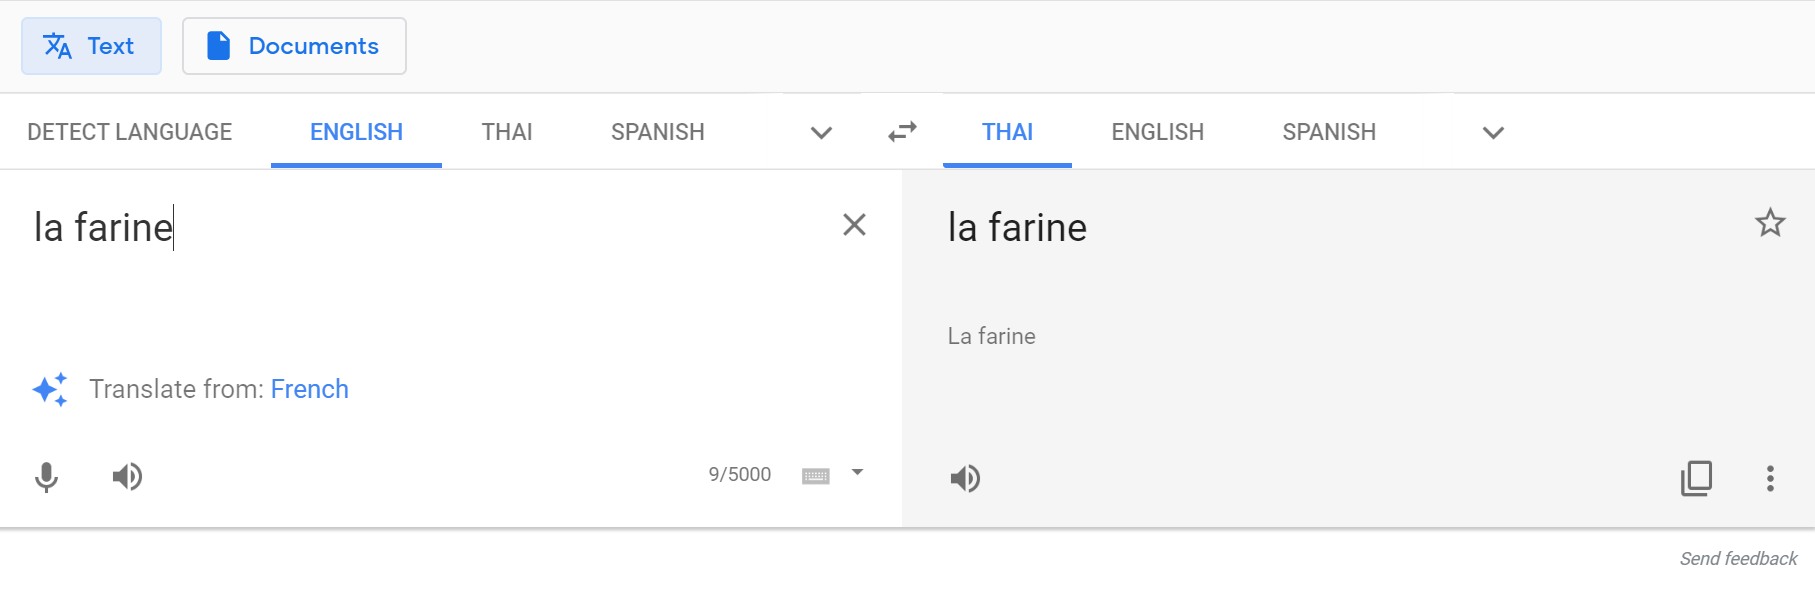 7 ฟีเจอร์เด็ด Google Translate แอพแปลภาษาฟรี แค่ยกก็แปลได้